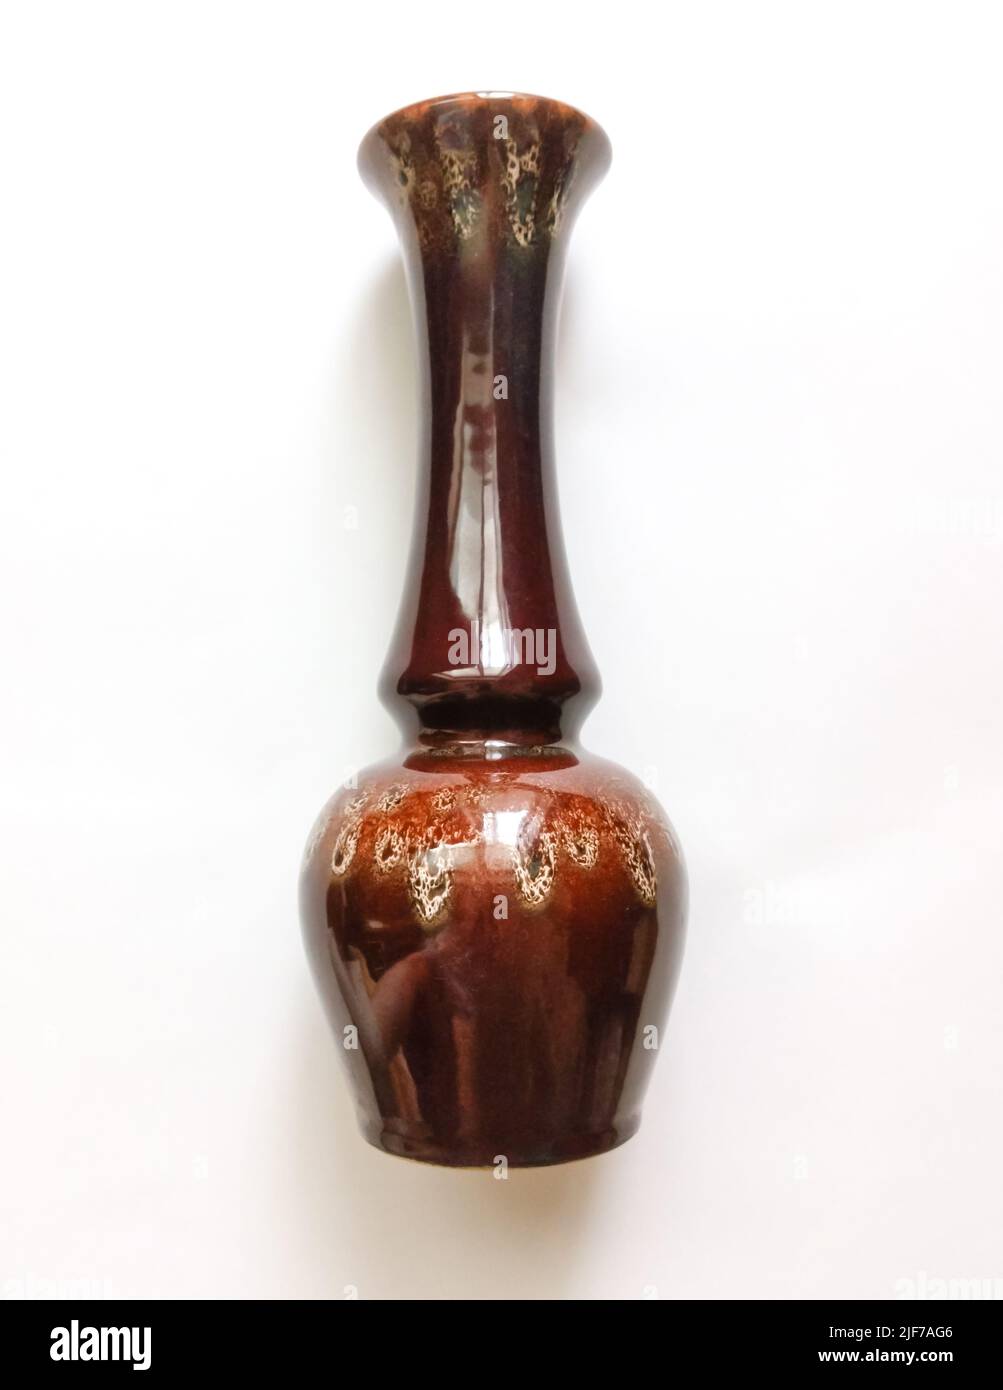 Old vintage Ceramiv Vase, made in Soviet times. Stock Photo